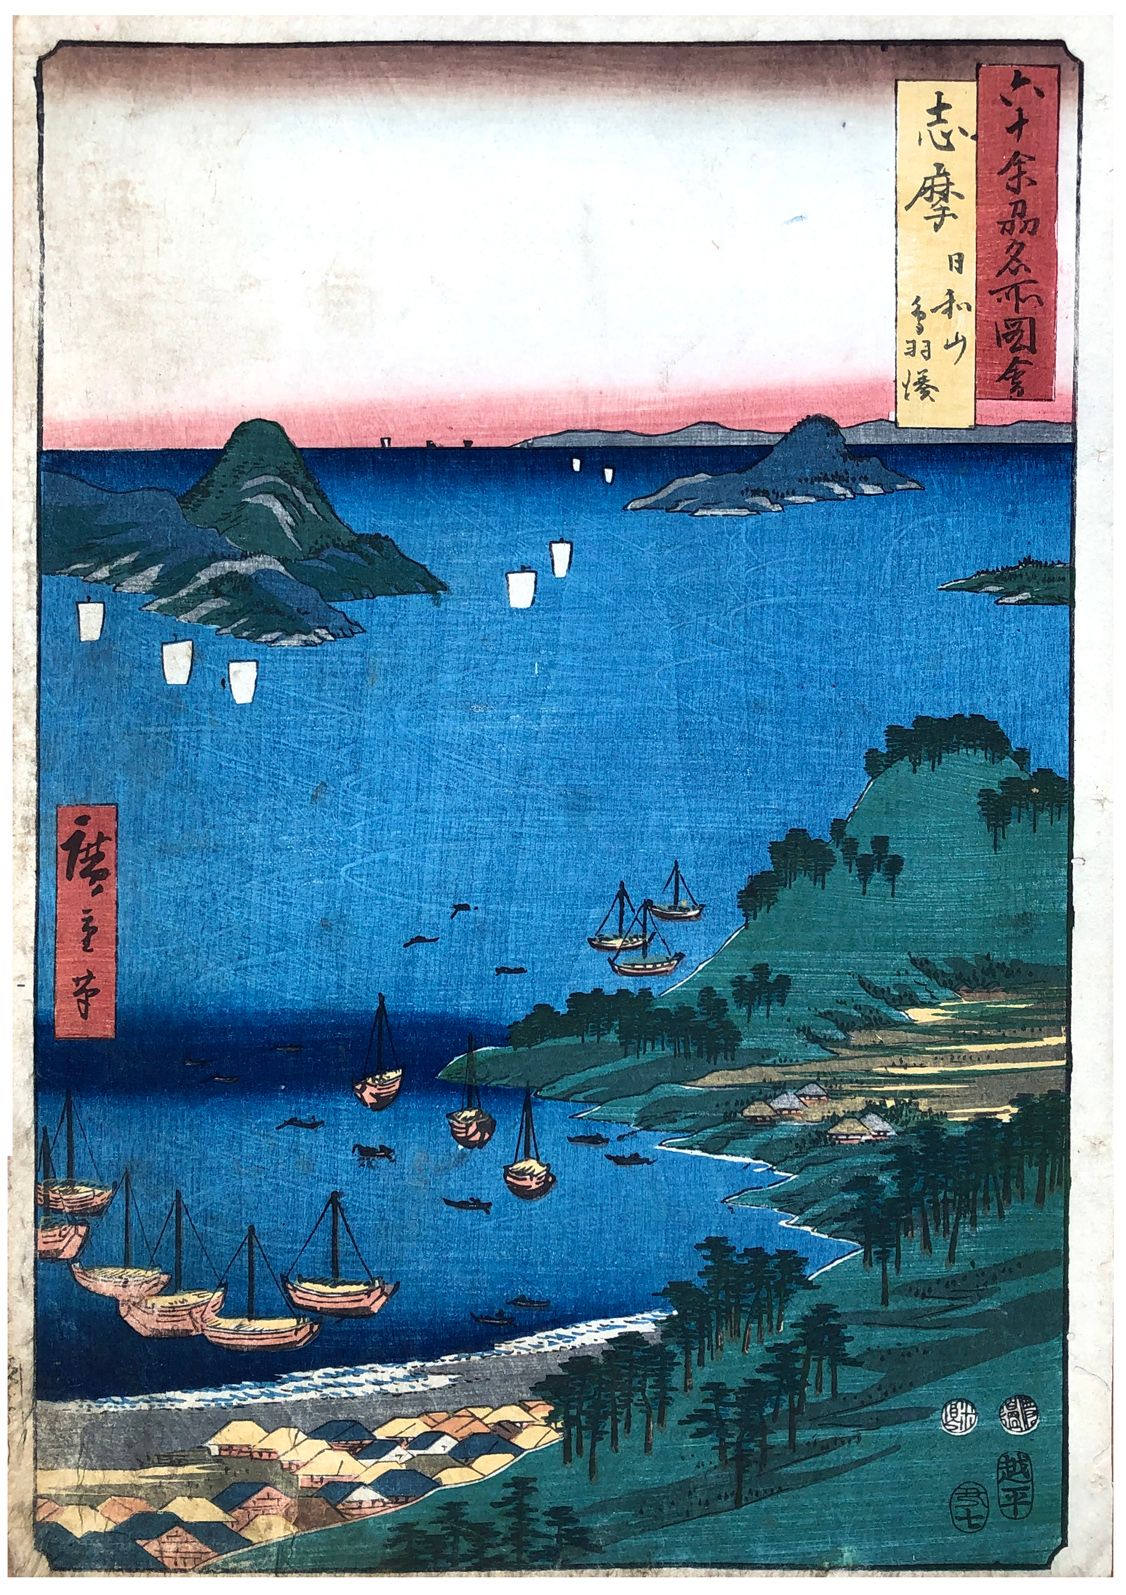 Japanese Woodblock Print by Utagawa Hiroshige 60 Odd Province # 8 Shima Province&hellip;